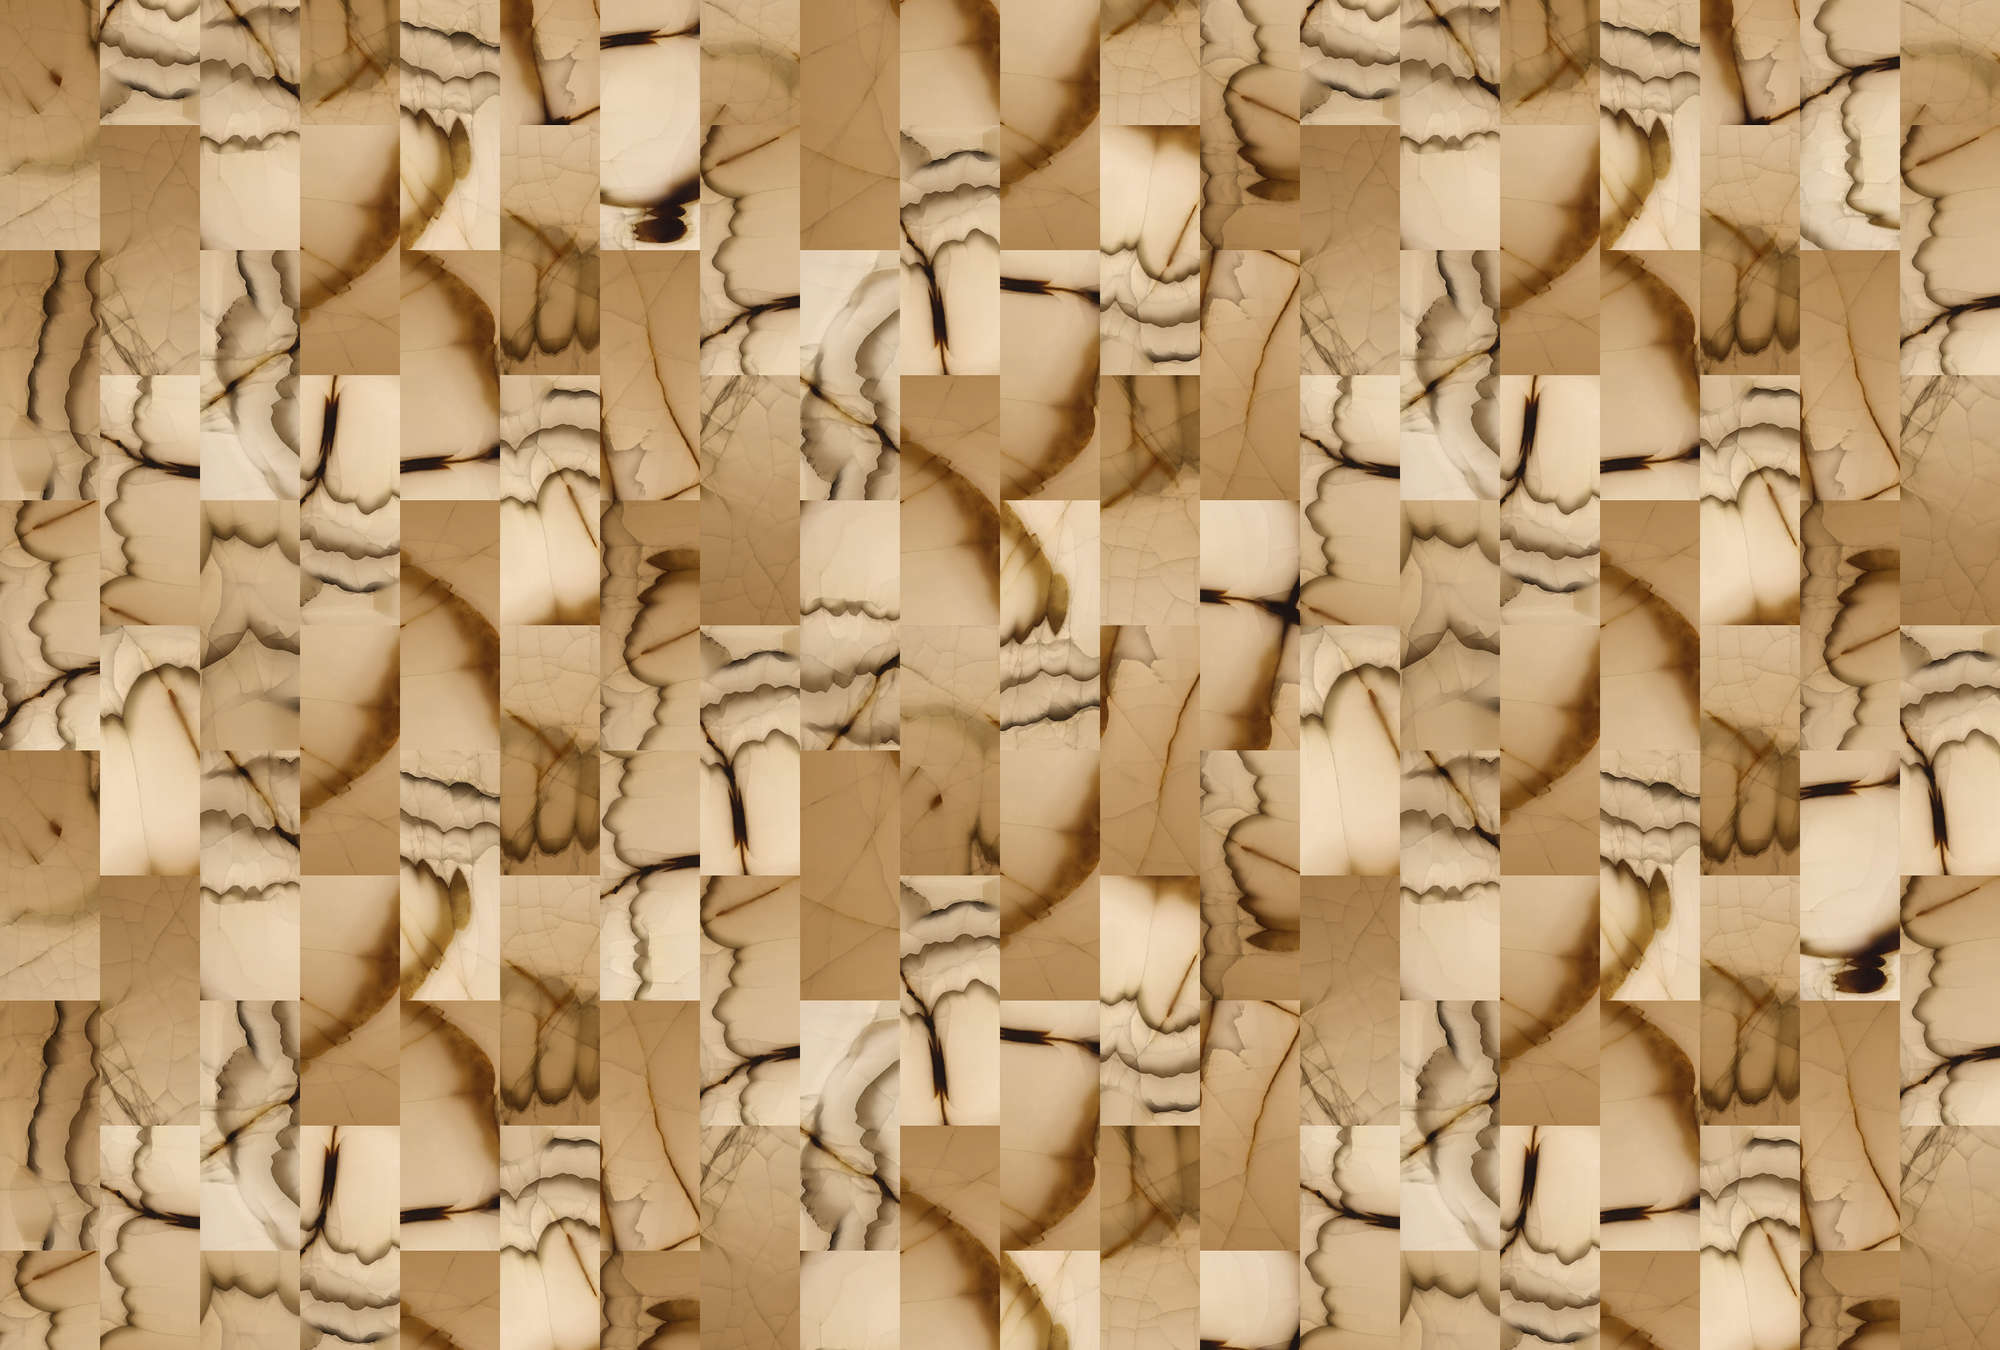             Piedra cortada 1 - Mural abstracto con aspecto de piedra - Beige, Marrón | Perla liso no tejido
        